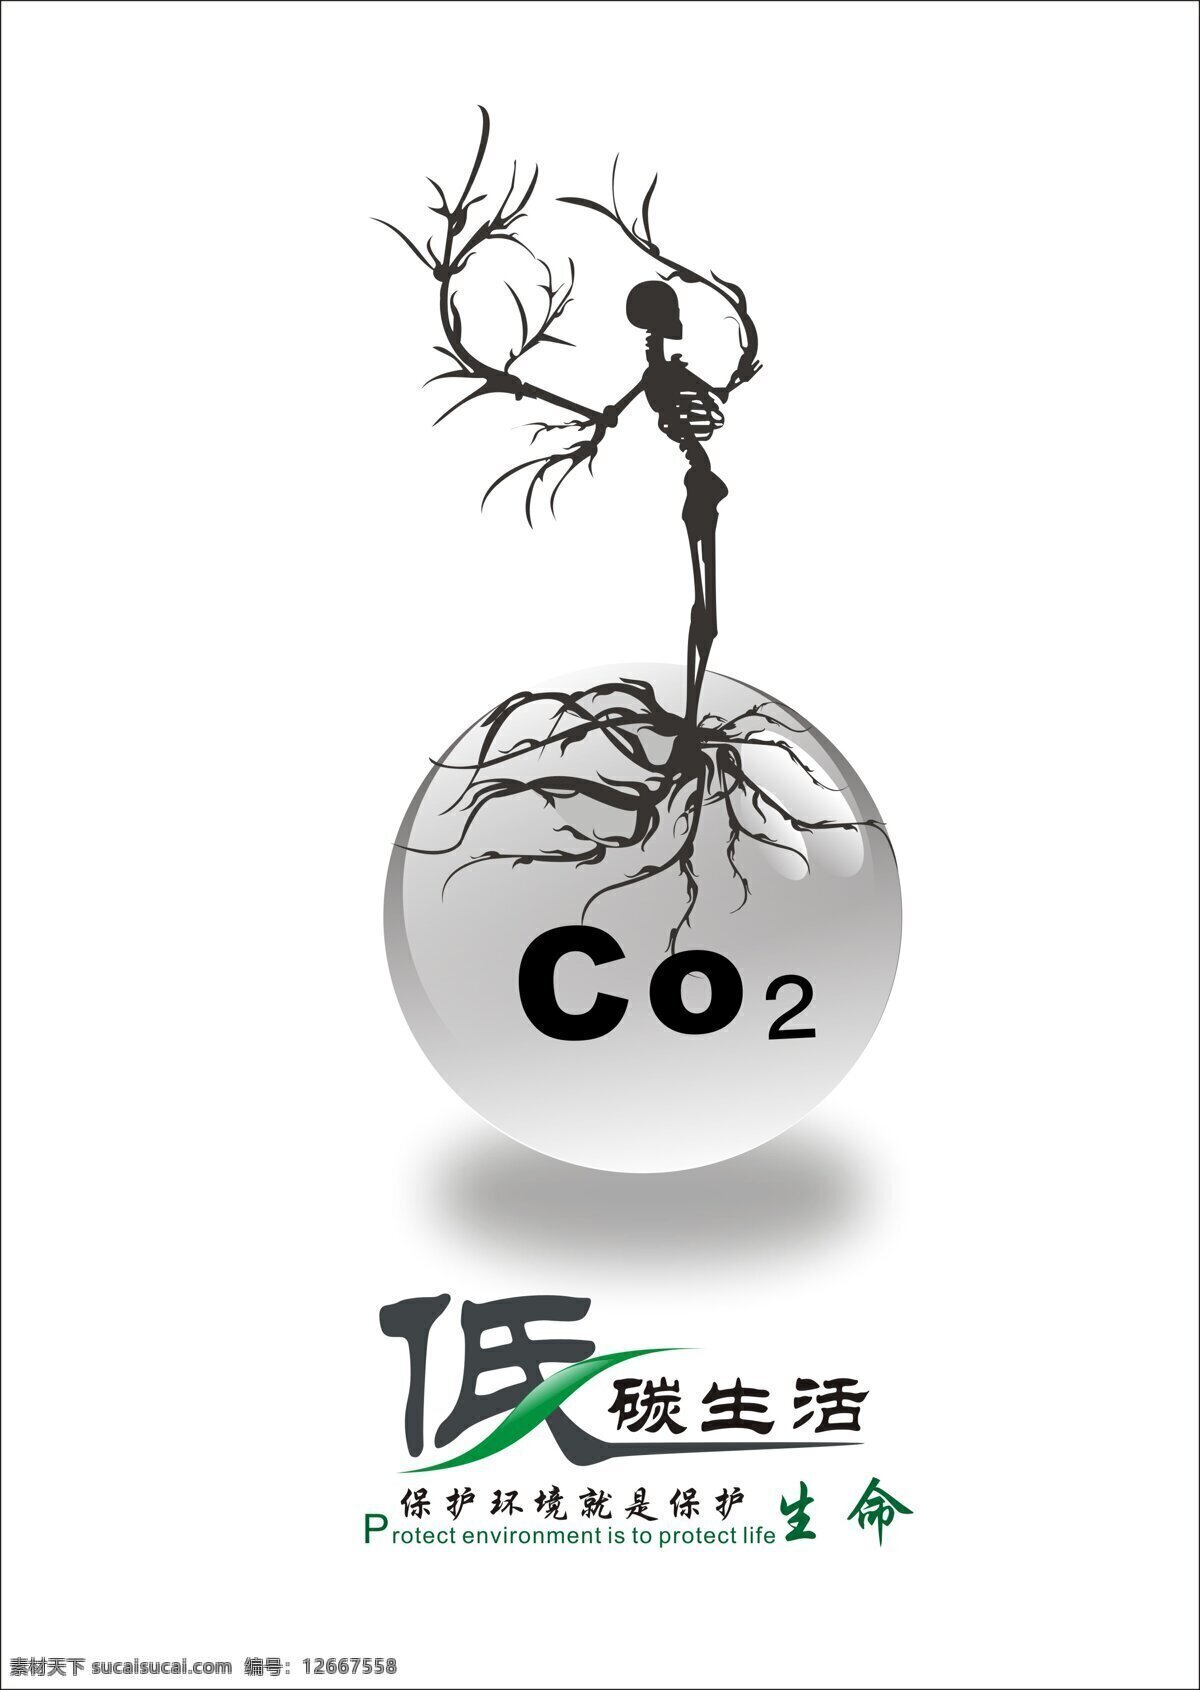 低碳 公益海报 环境保护 人物 招贴设计 低 碳 生活 我们 多远 设计素材 模板下载 没有 氧气 地球 人类会怎样 环保公益海报